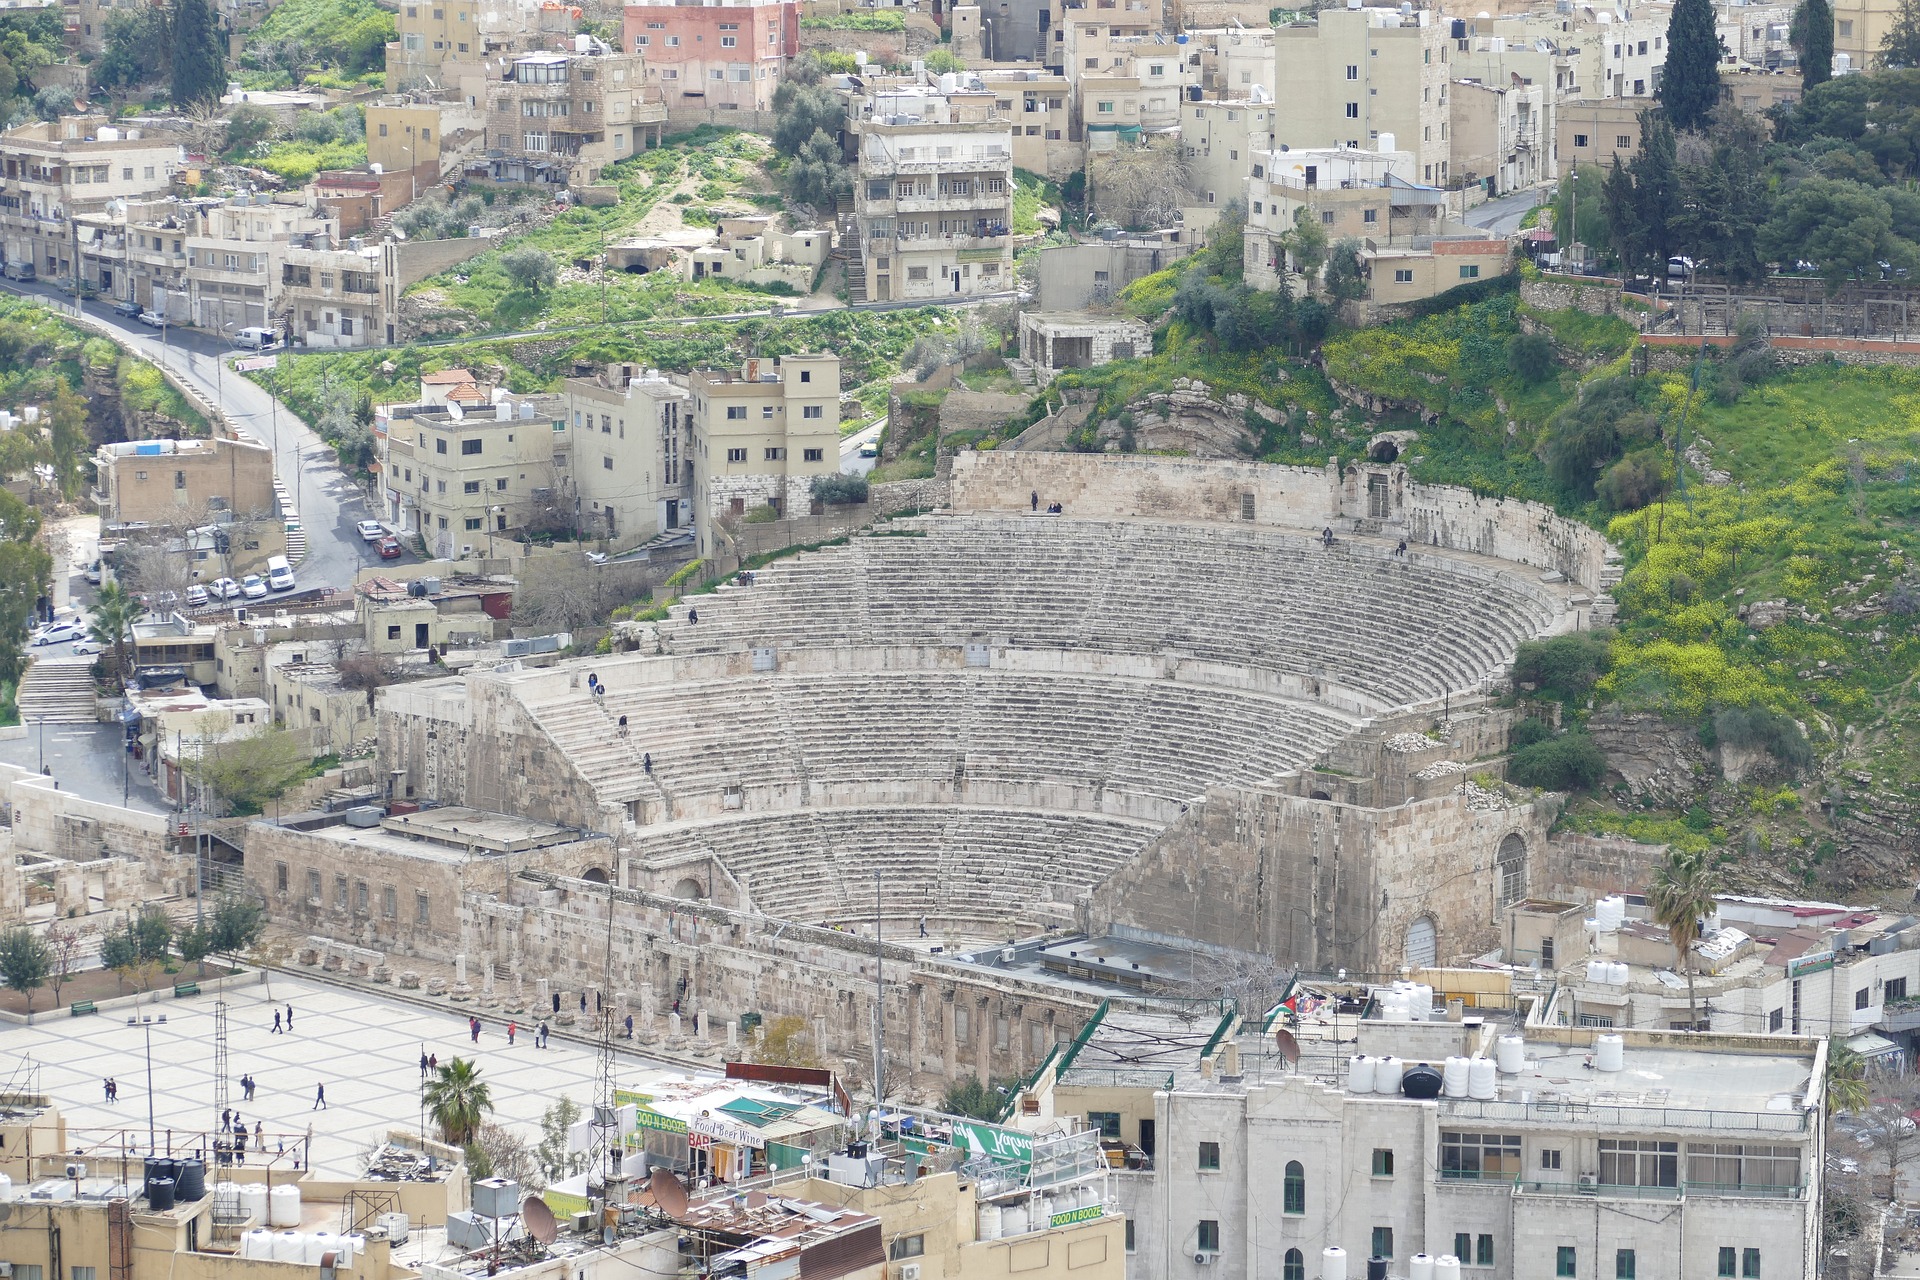 The Roman Theater of Amman